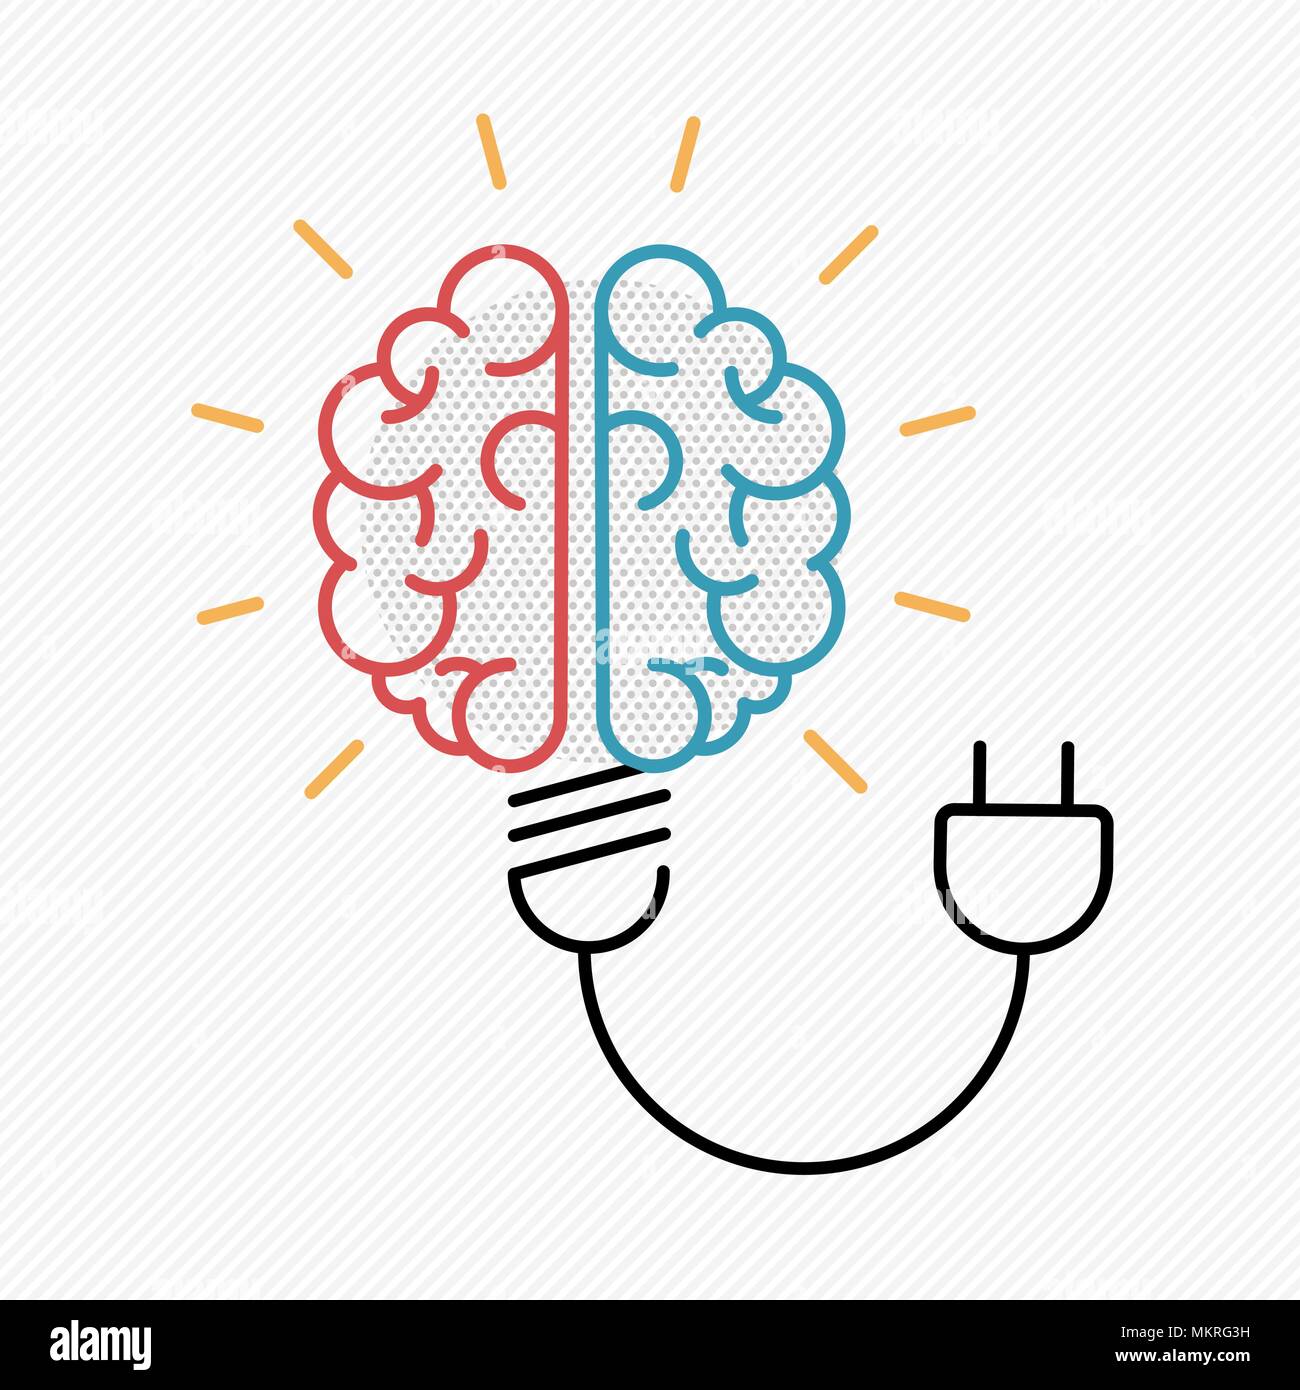 Nouvelle idée concept illustration dans la conception moderne avec les grandes lignes du cerveau humain comme l'ampoule électrique. Vecteur EPS10. Illustration de Vecteur